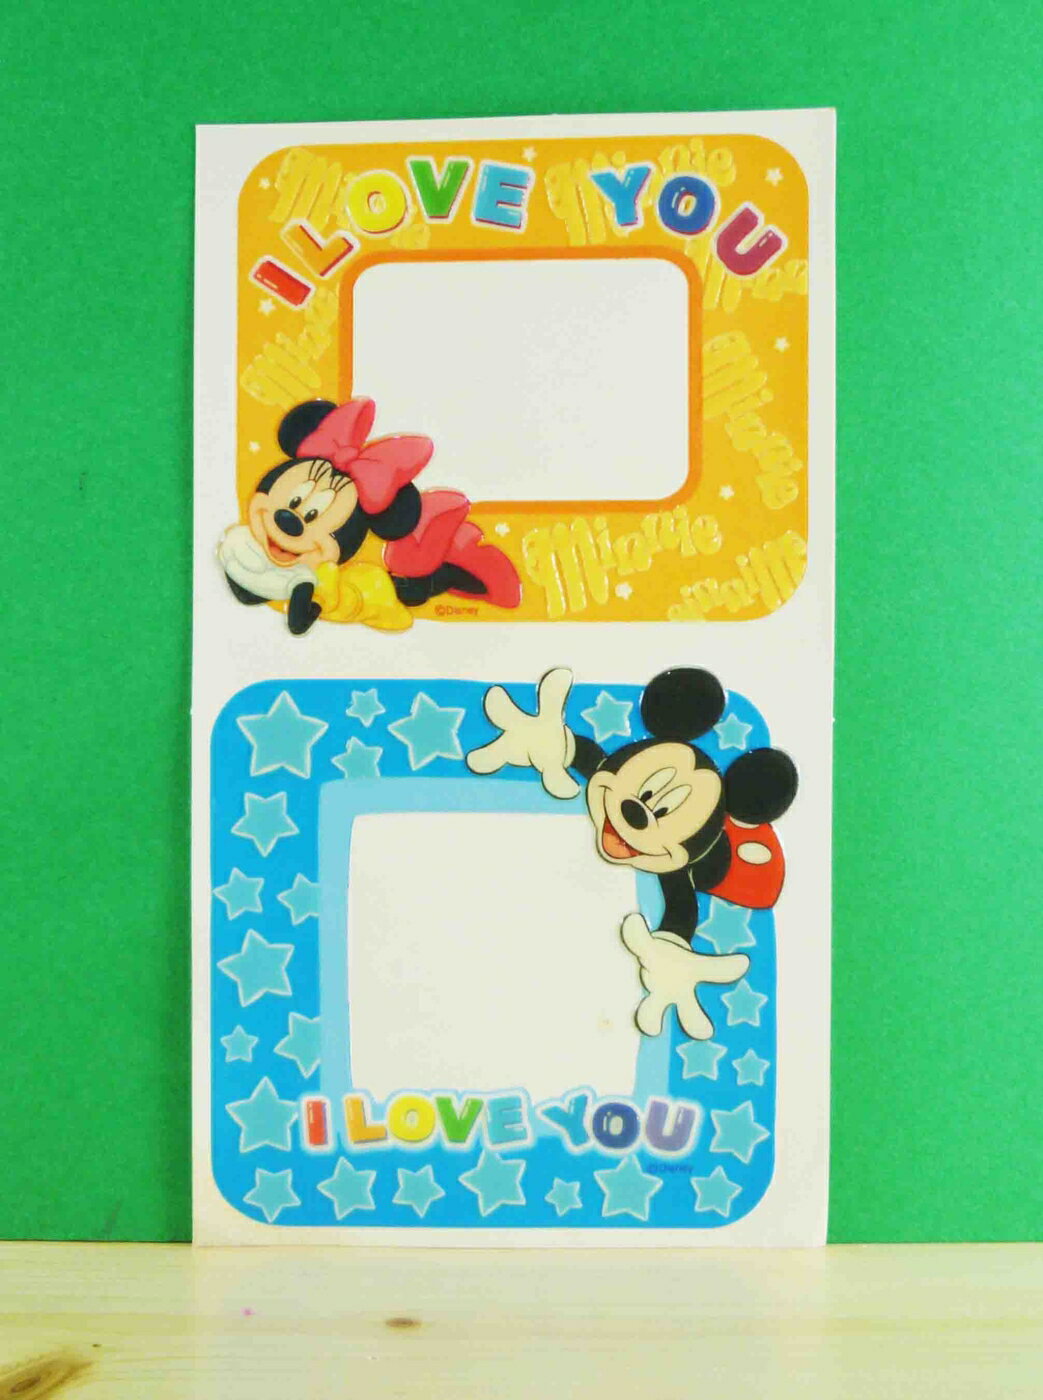 【震撼精品百貨】Micky Mouse 米奇/米妮 相框貼-黃藍 震撼日式精品百貨